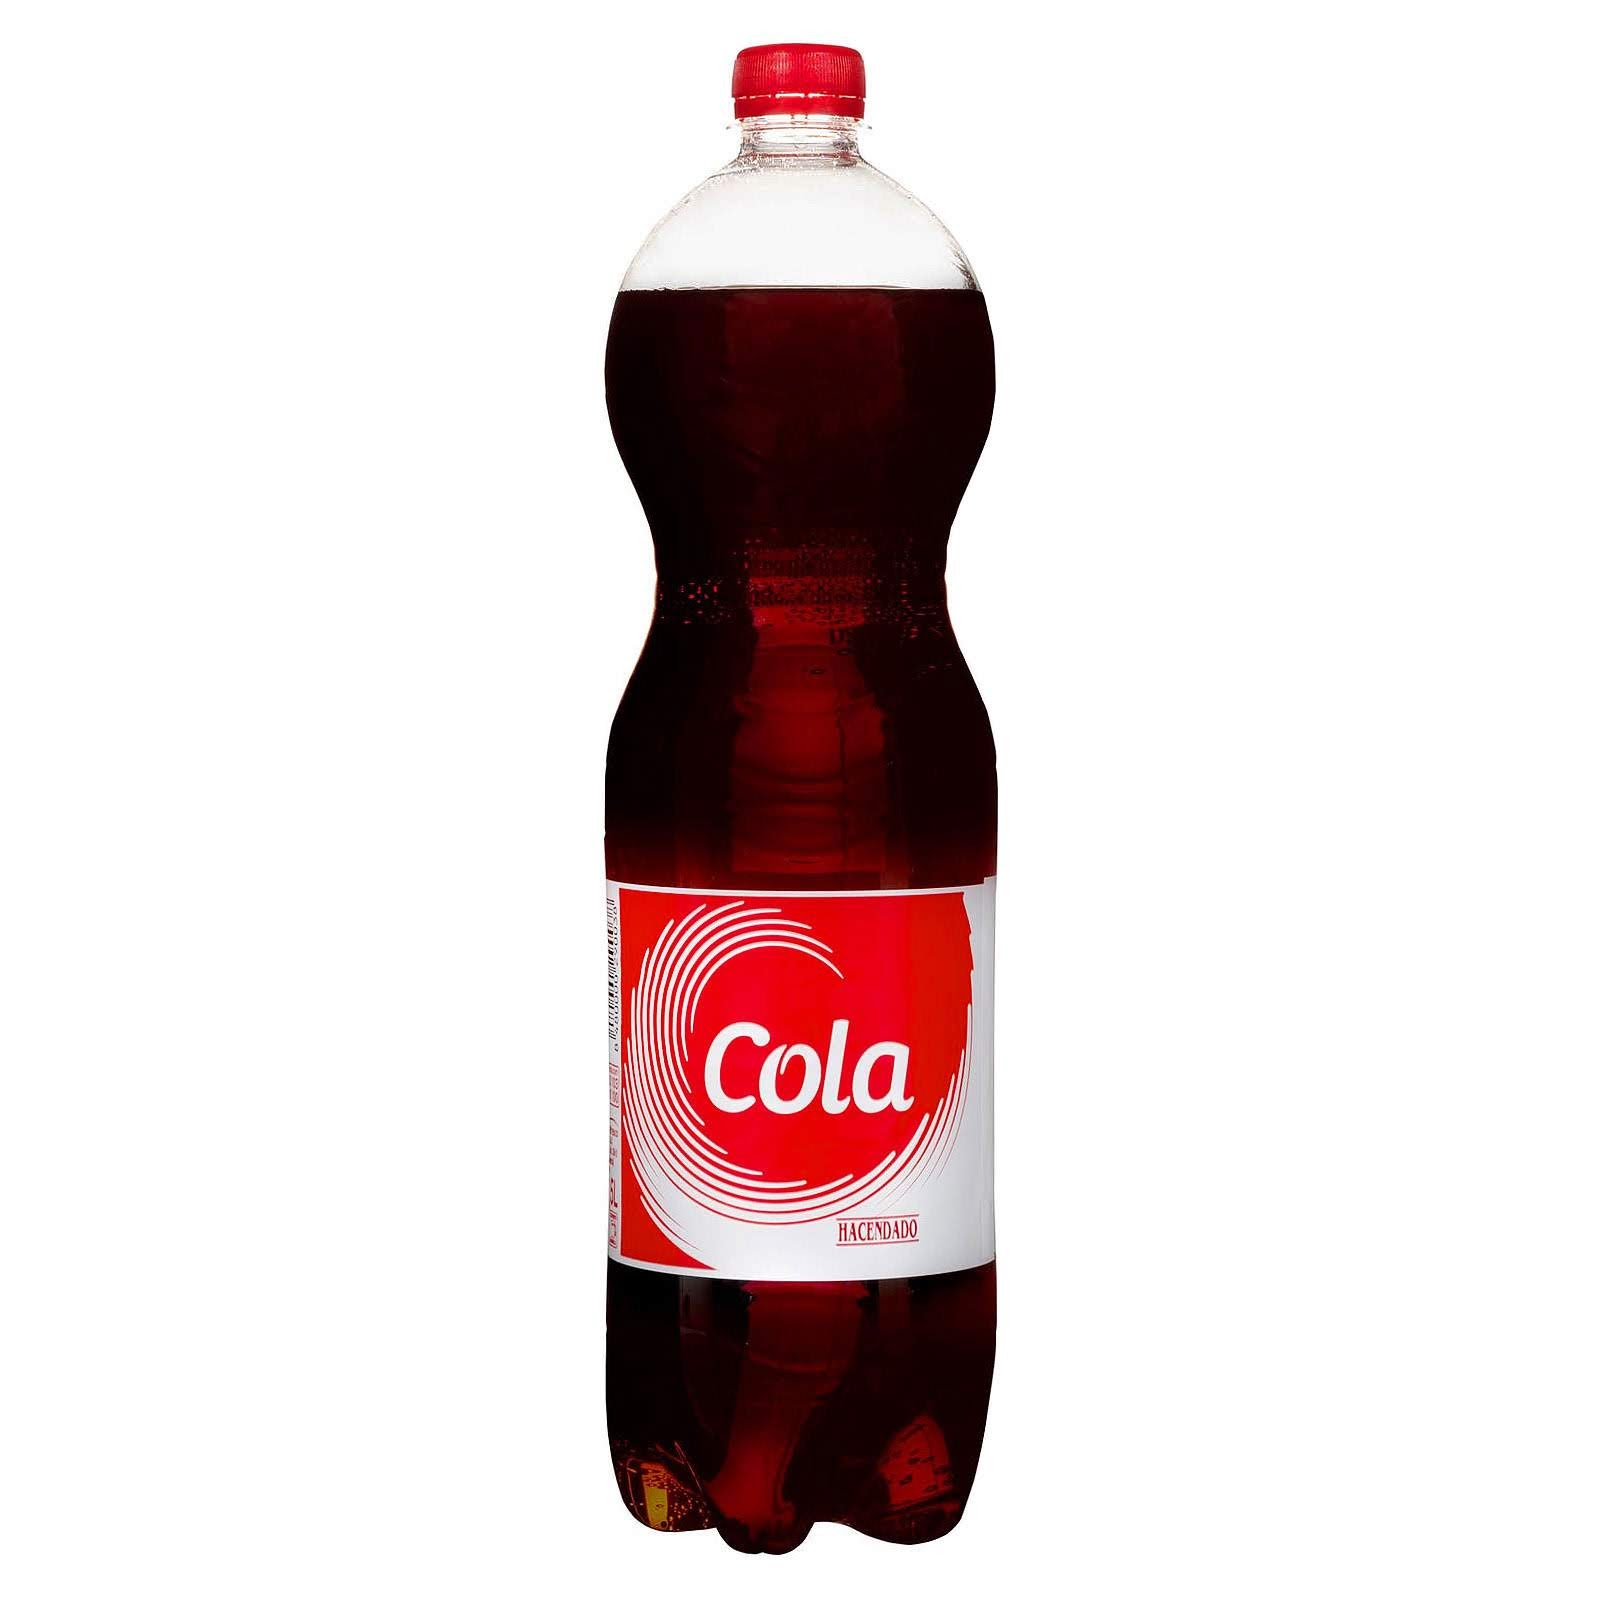 Cola Mercadona